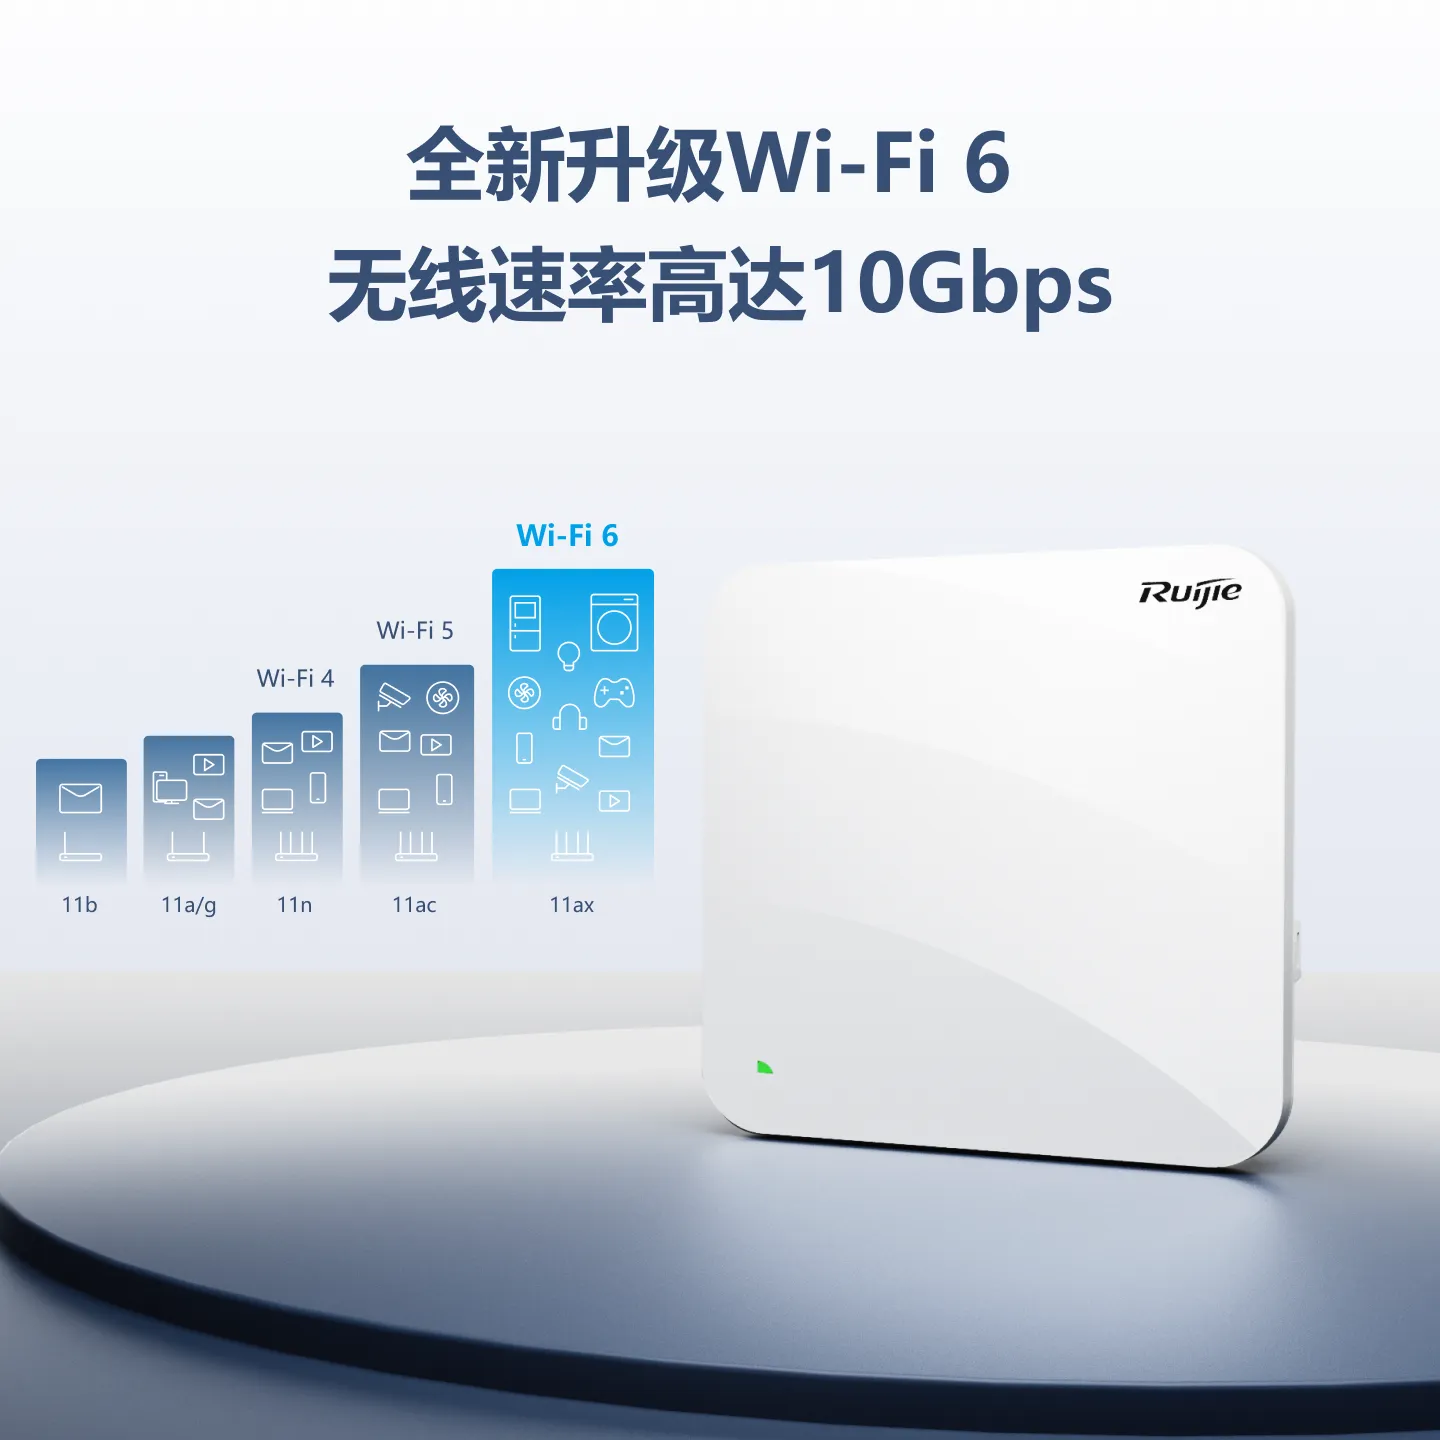 Wi-Fi 6涓�灏�棰�10Gbps���扮骇瀹ゅ��楂�瀵���绾挎�ュ�ョ�癸�RG-AP880(TR) 